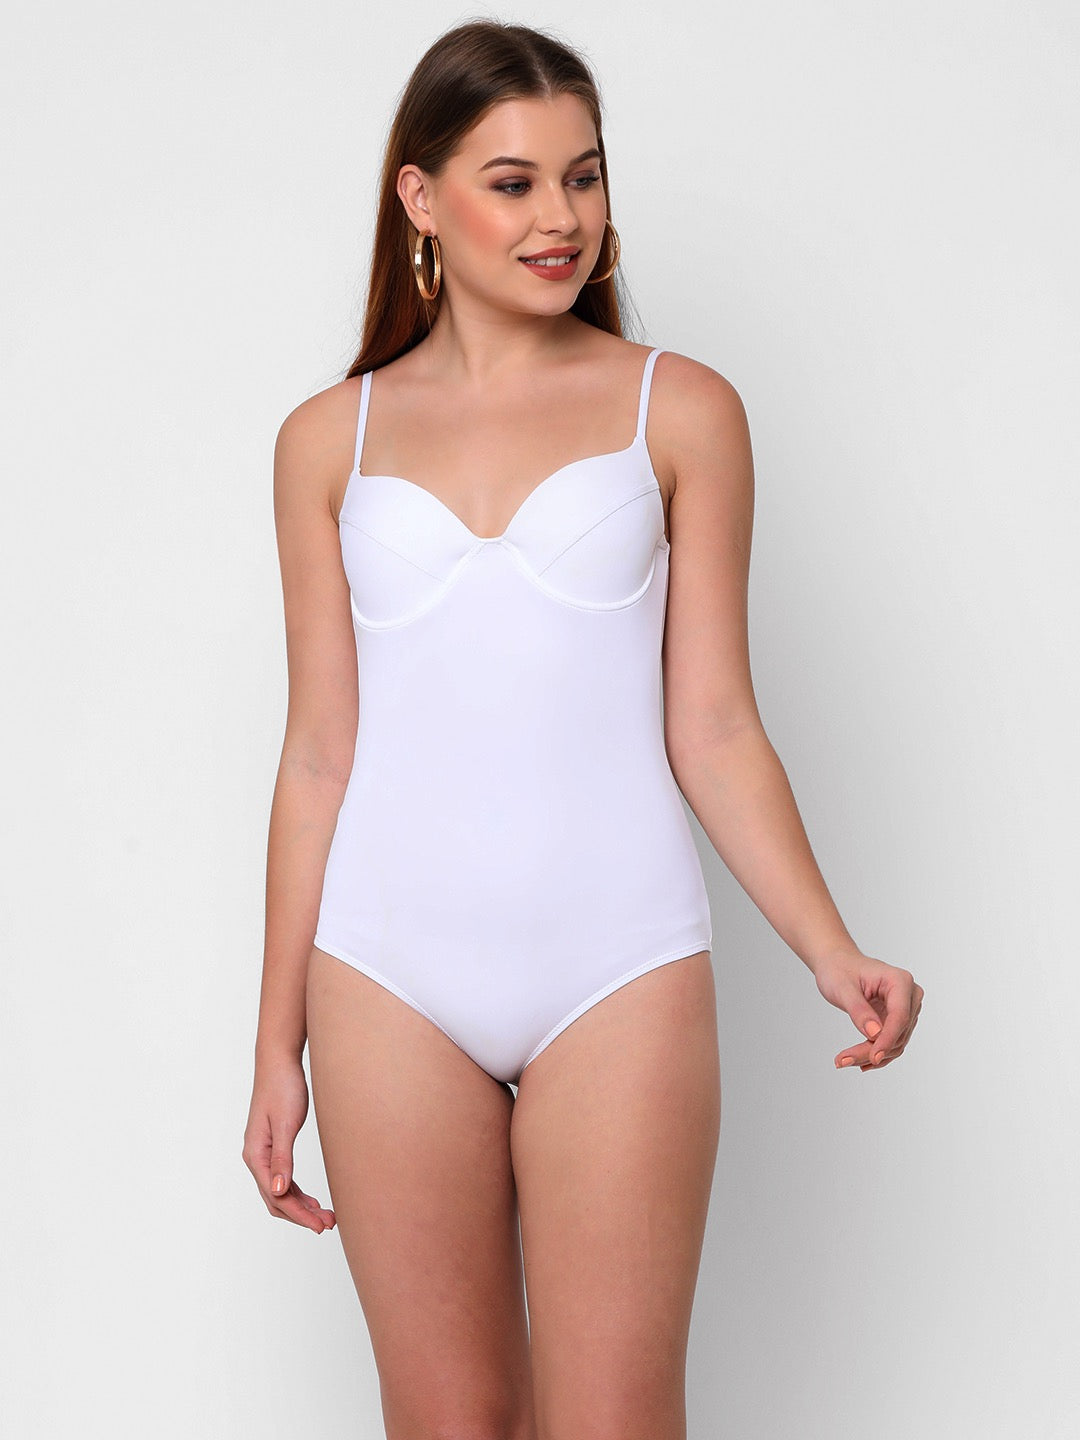 Esha Lal Swimwear solid white women's one piece swimsuit